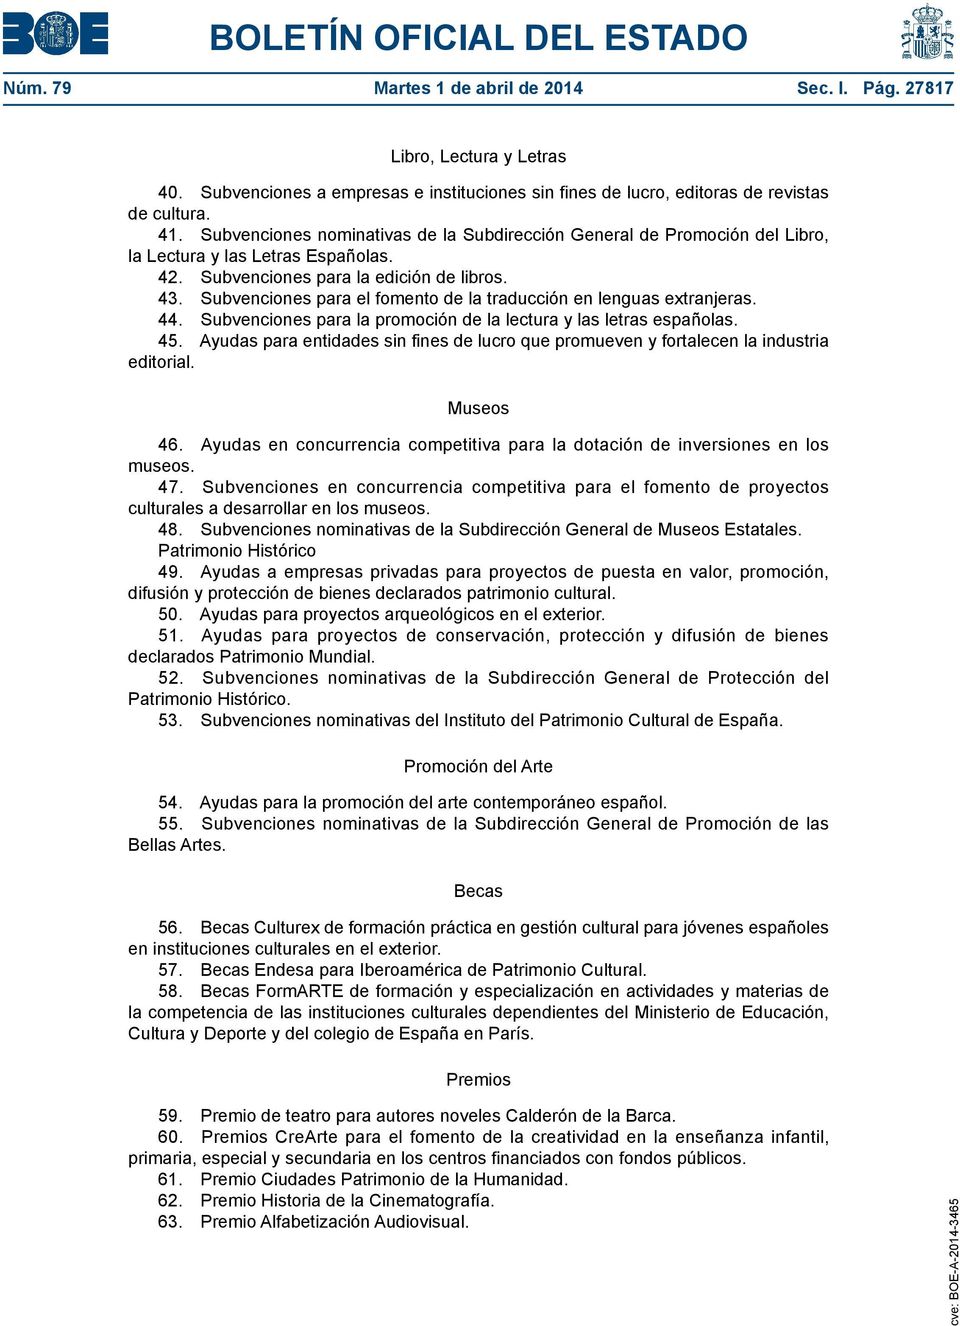 Subvenciones para el fomento de la traducción en lenguas extranjeras. 44. Subvenciones para la promoción de la lectura y las letras españolas. 45.